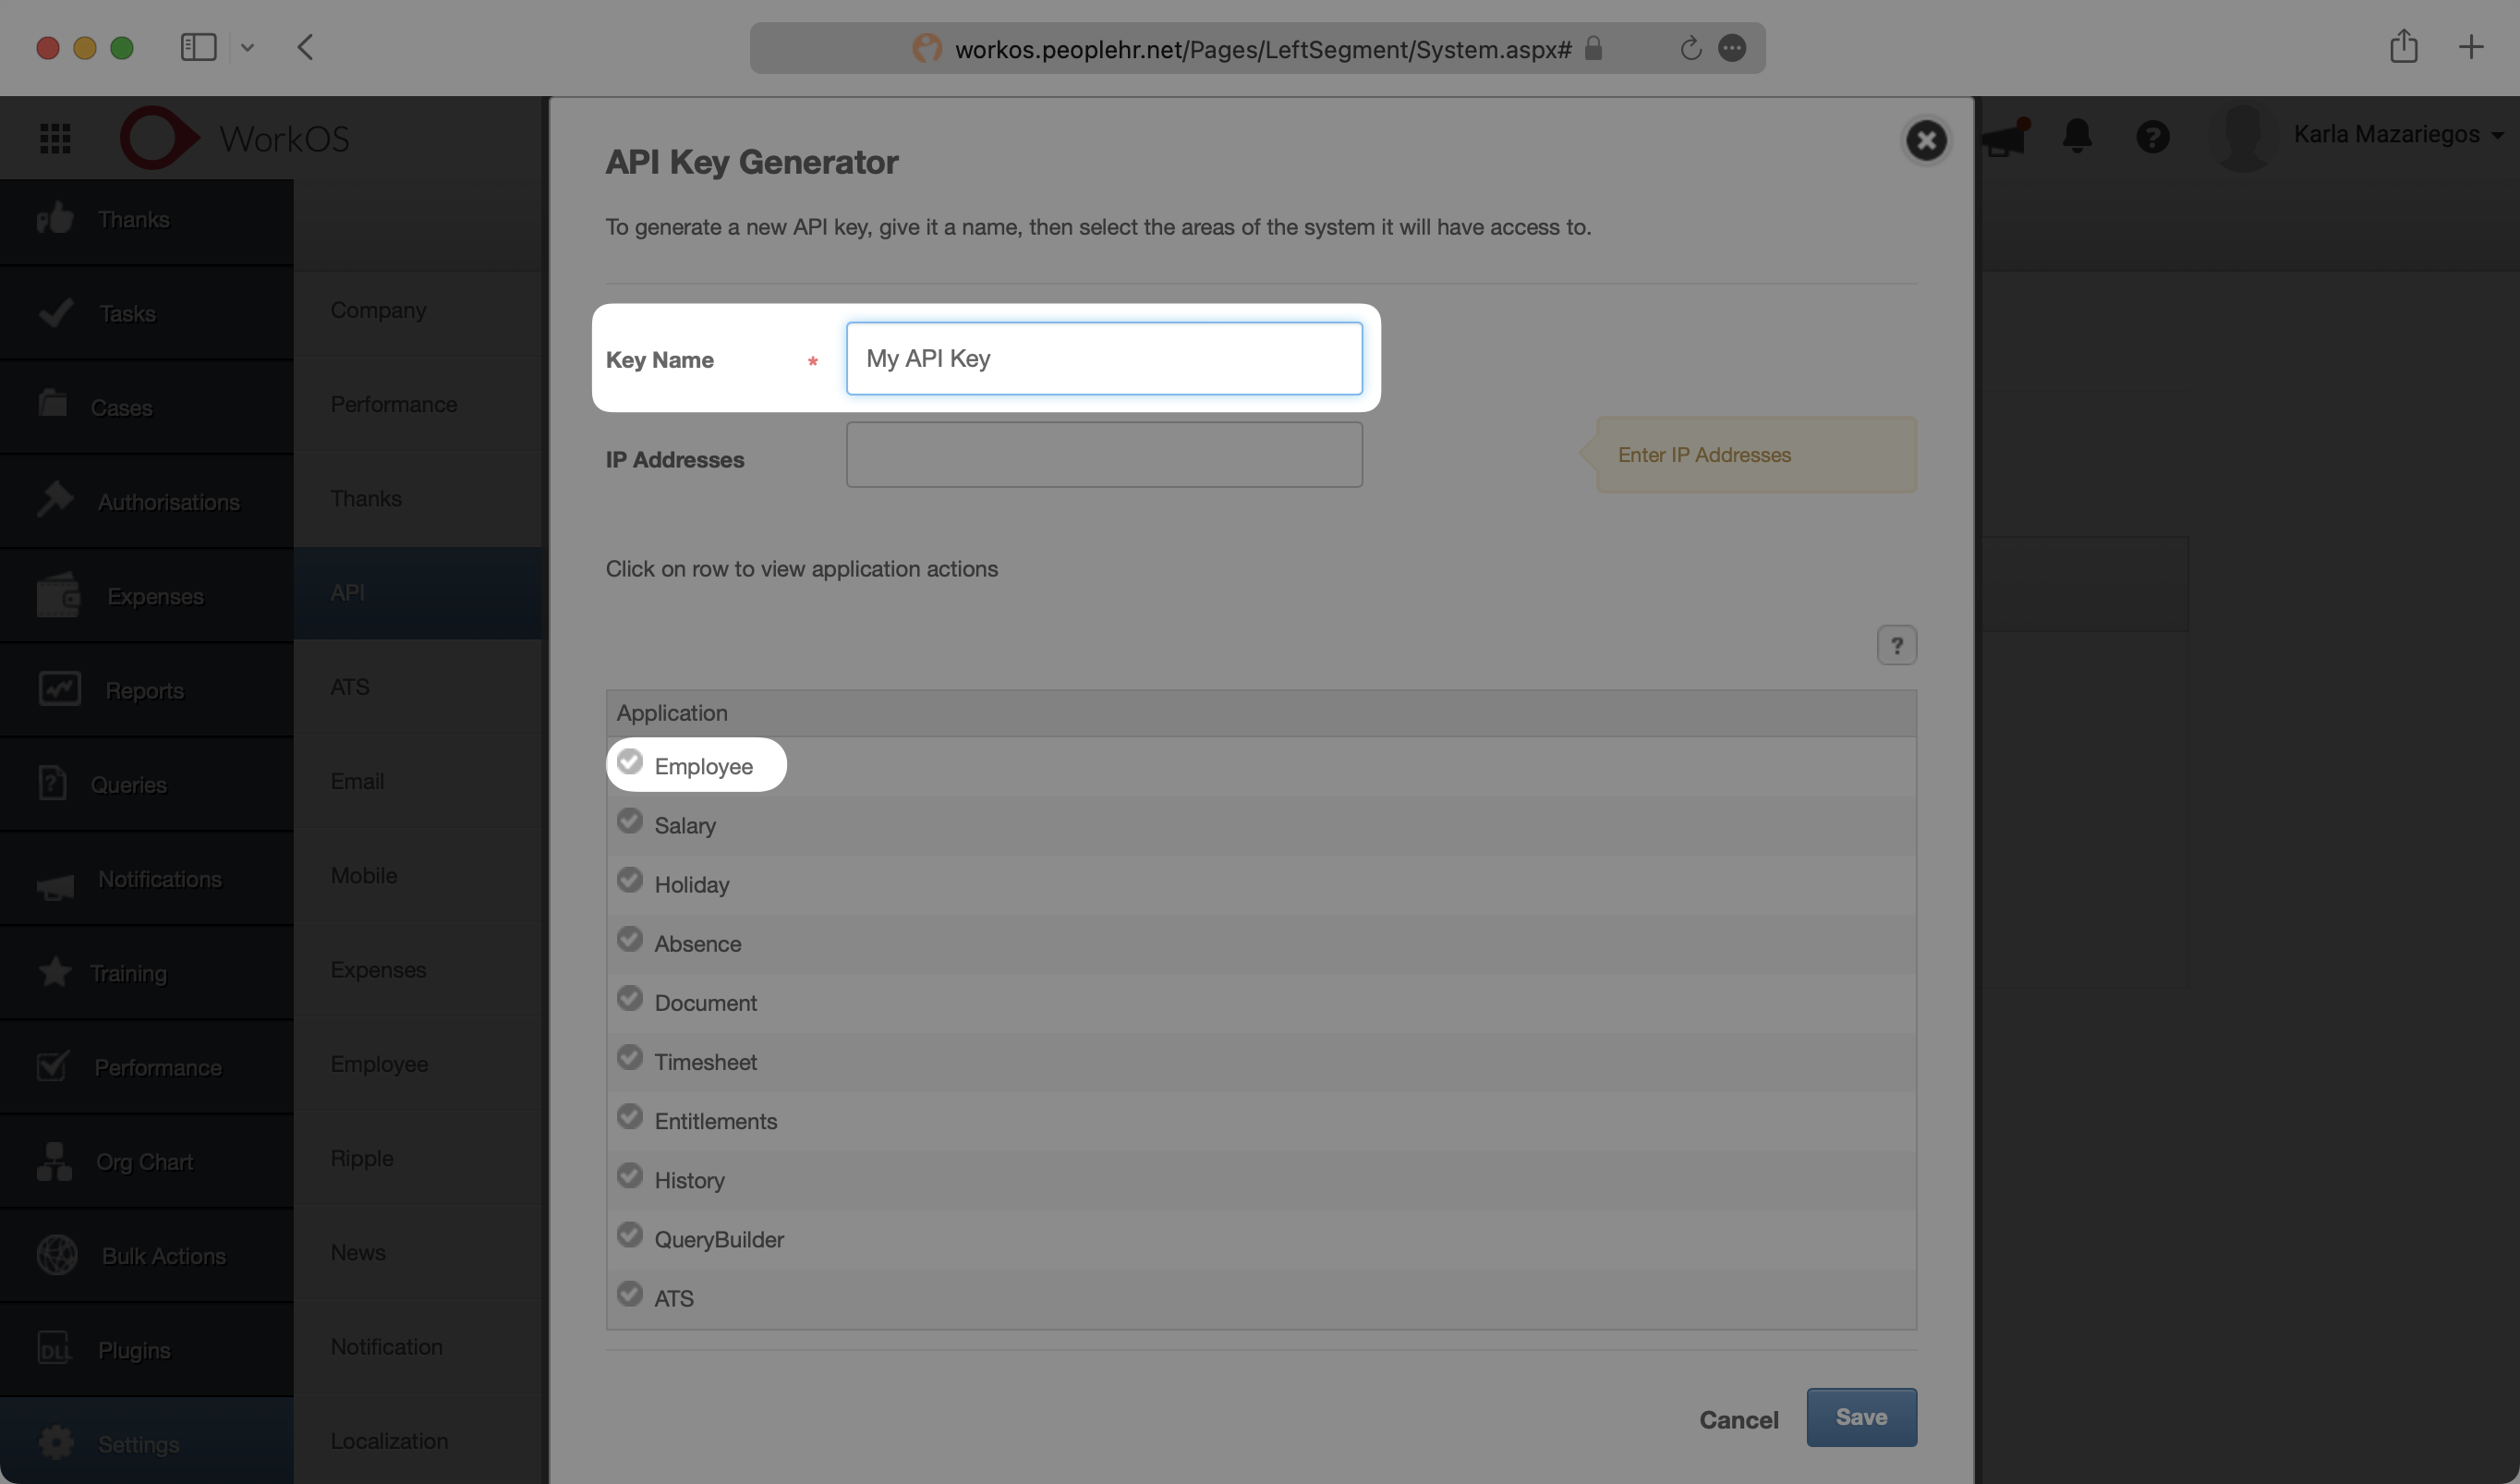 Configure Access People HR API Key